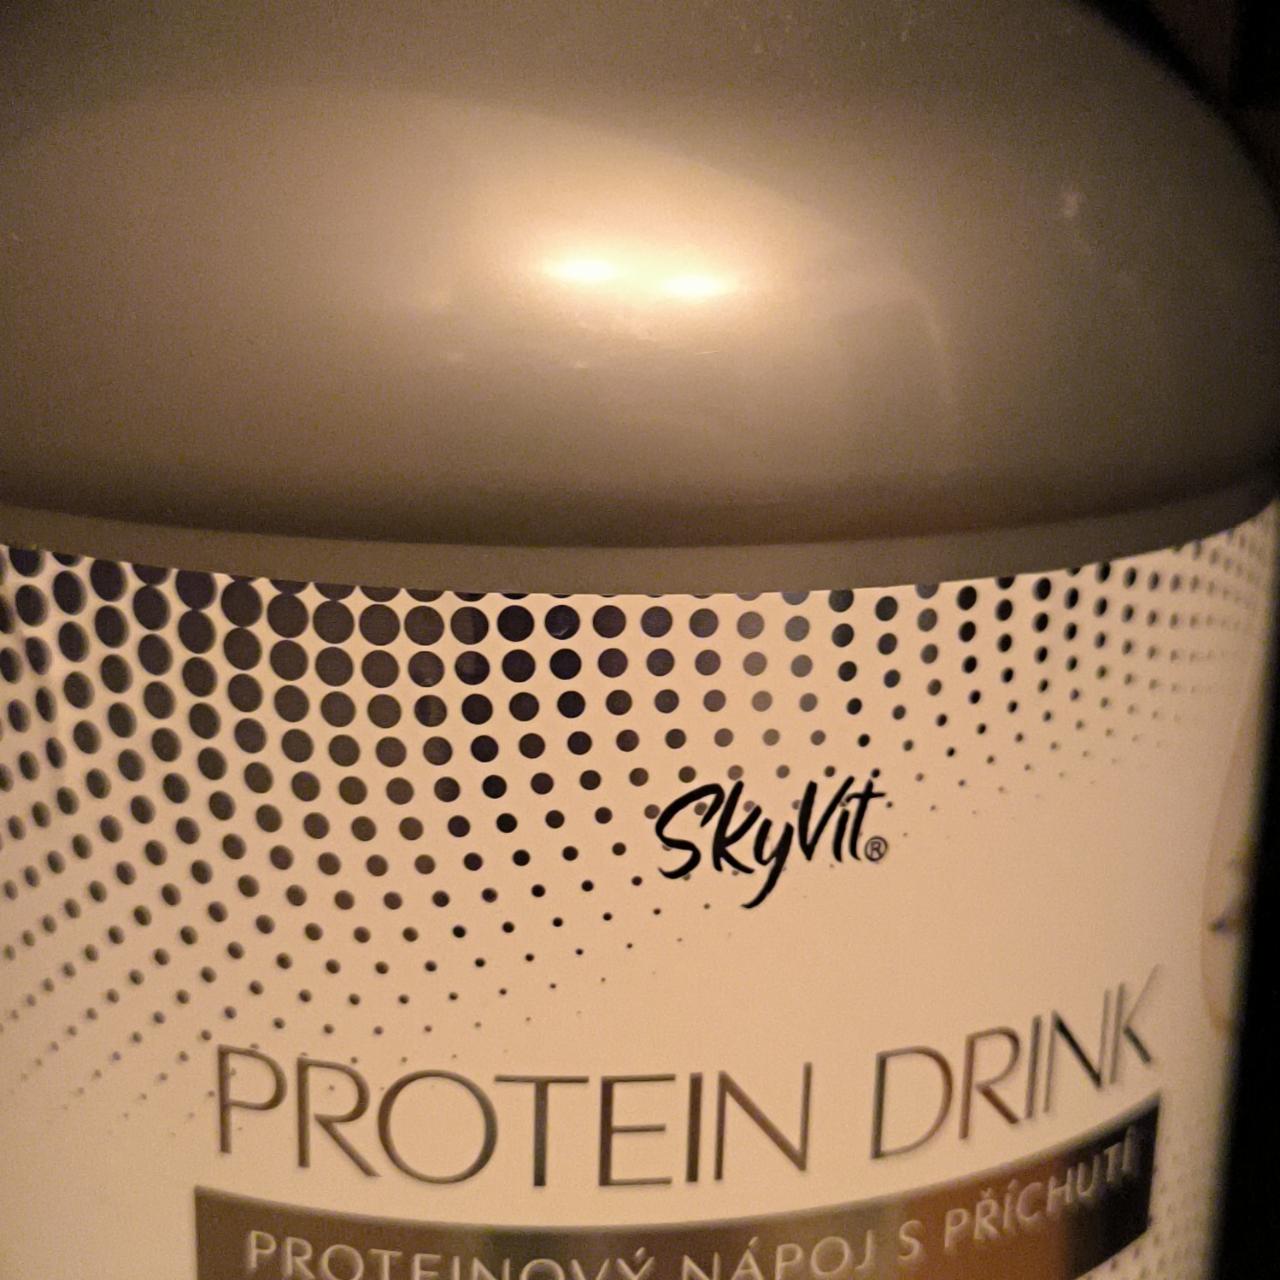 Fotografie - Protein drink proteinový nápoje s příchutí vanilky SkyVit